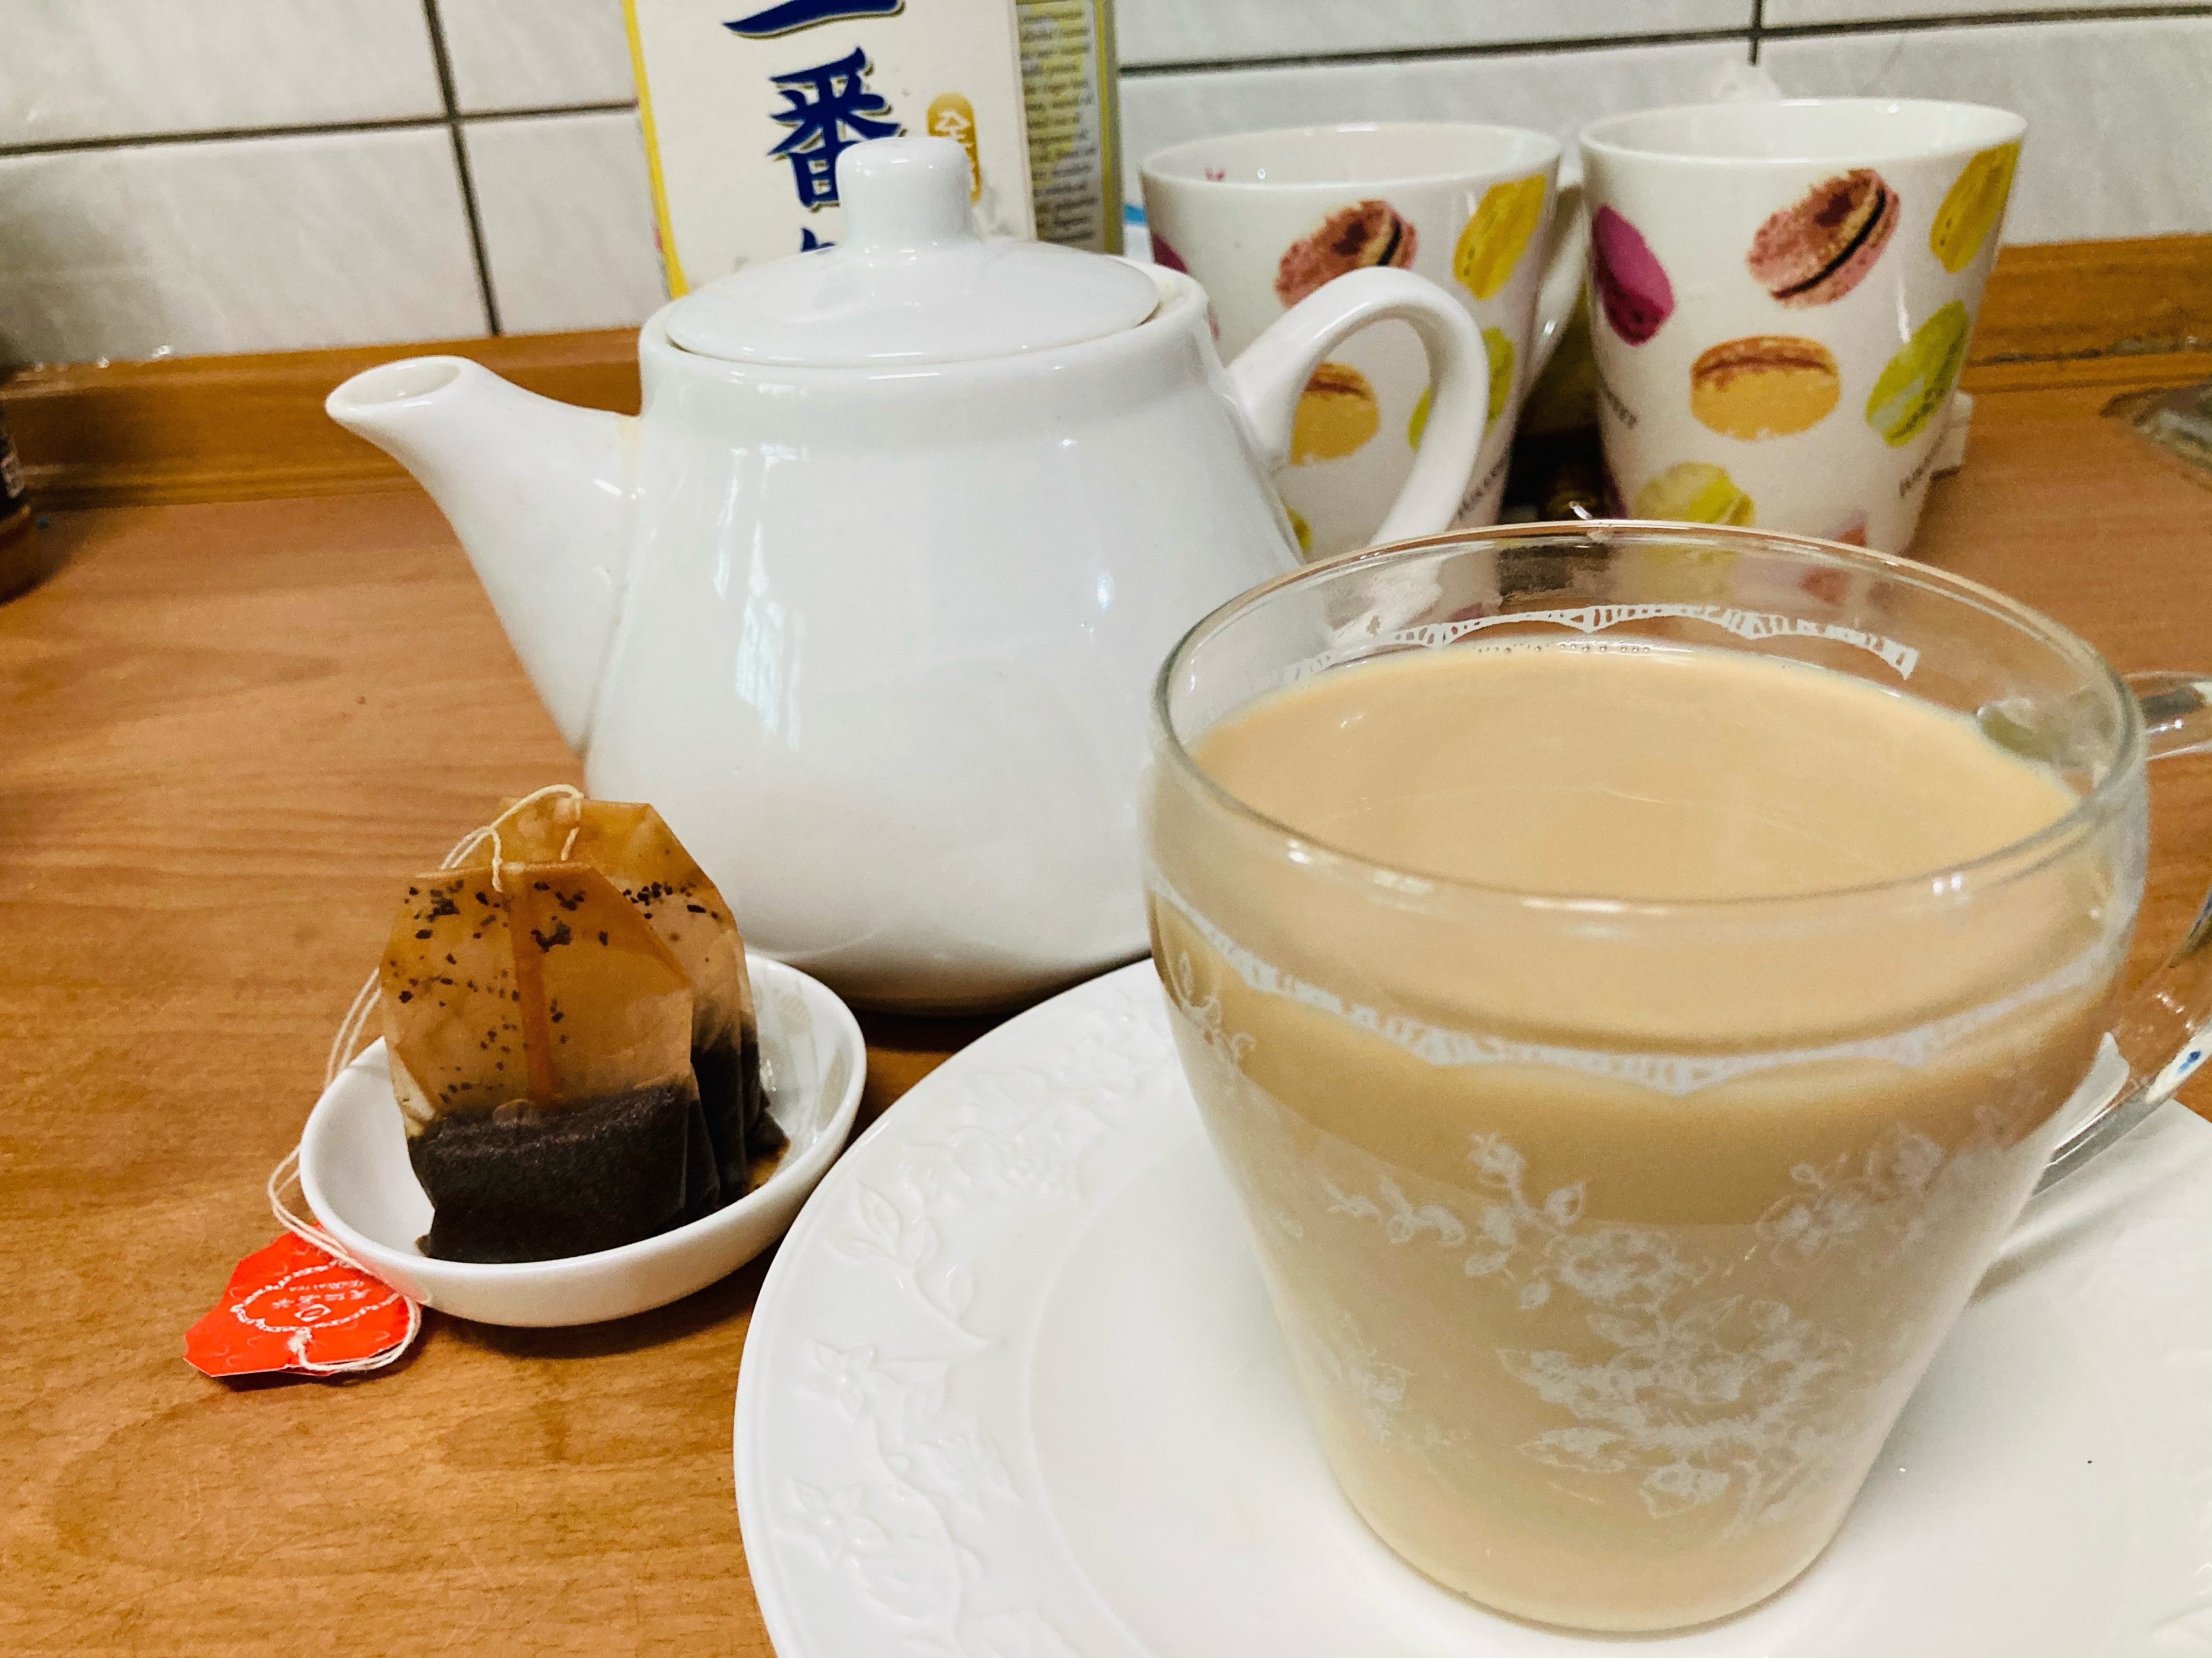 紅茶拿鐵/鮮奶茶減糖版